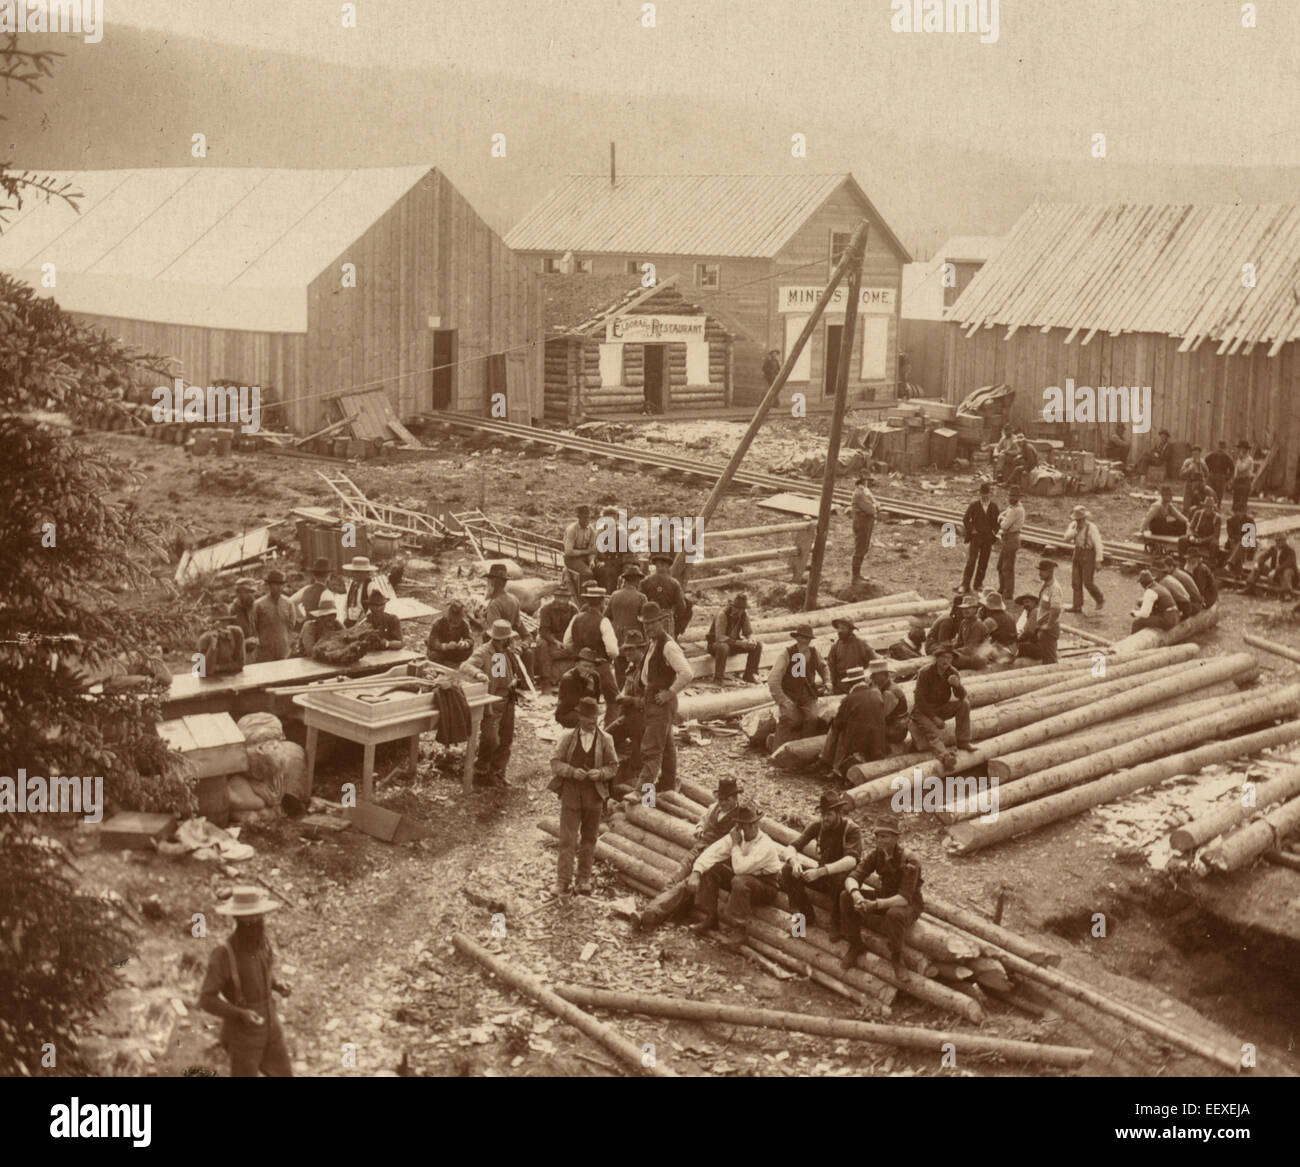 Descansando, Dawson City - vista de pájaro de hombres sentados en los registros y en permanente construcción con vista del restaurante "Eldorado" y el "iners Home' en el fondo. Foto de stock